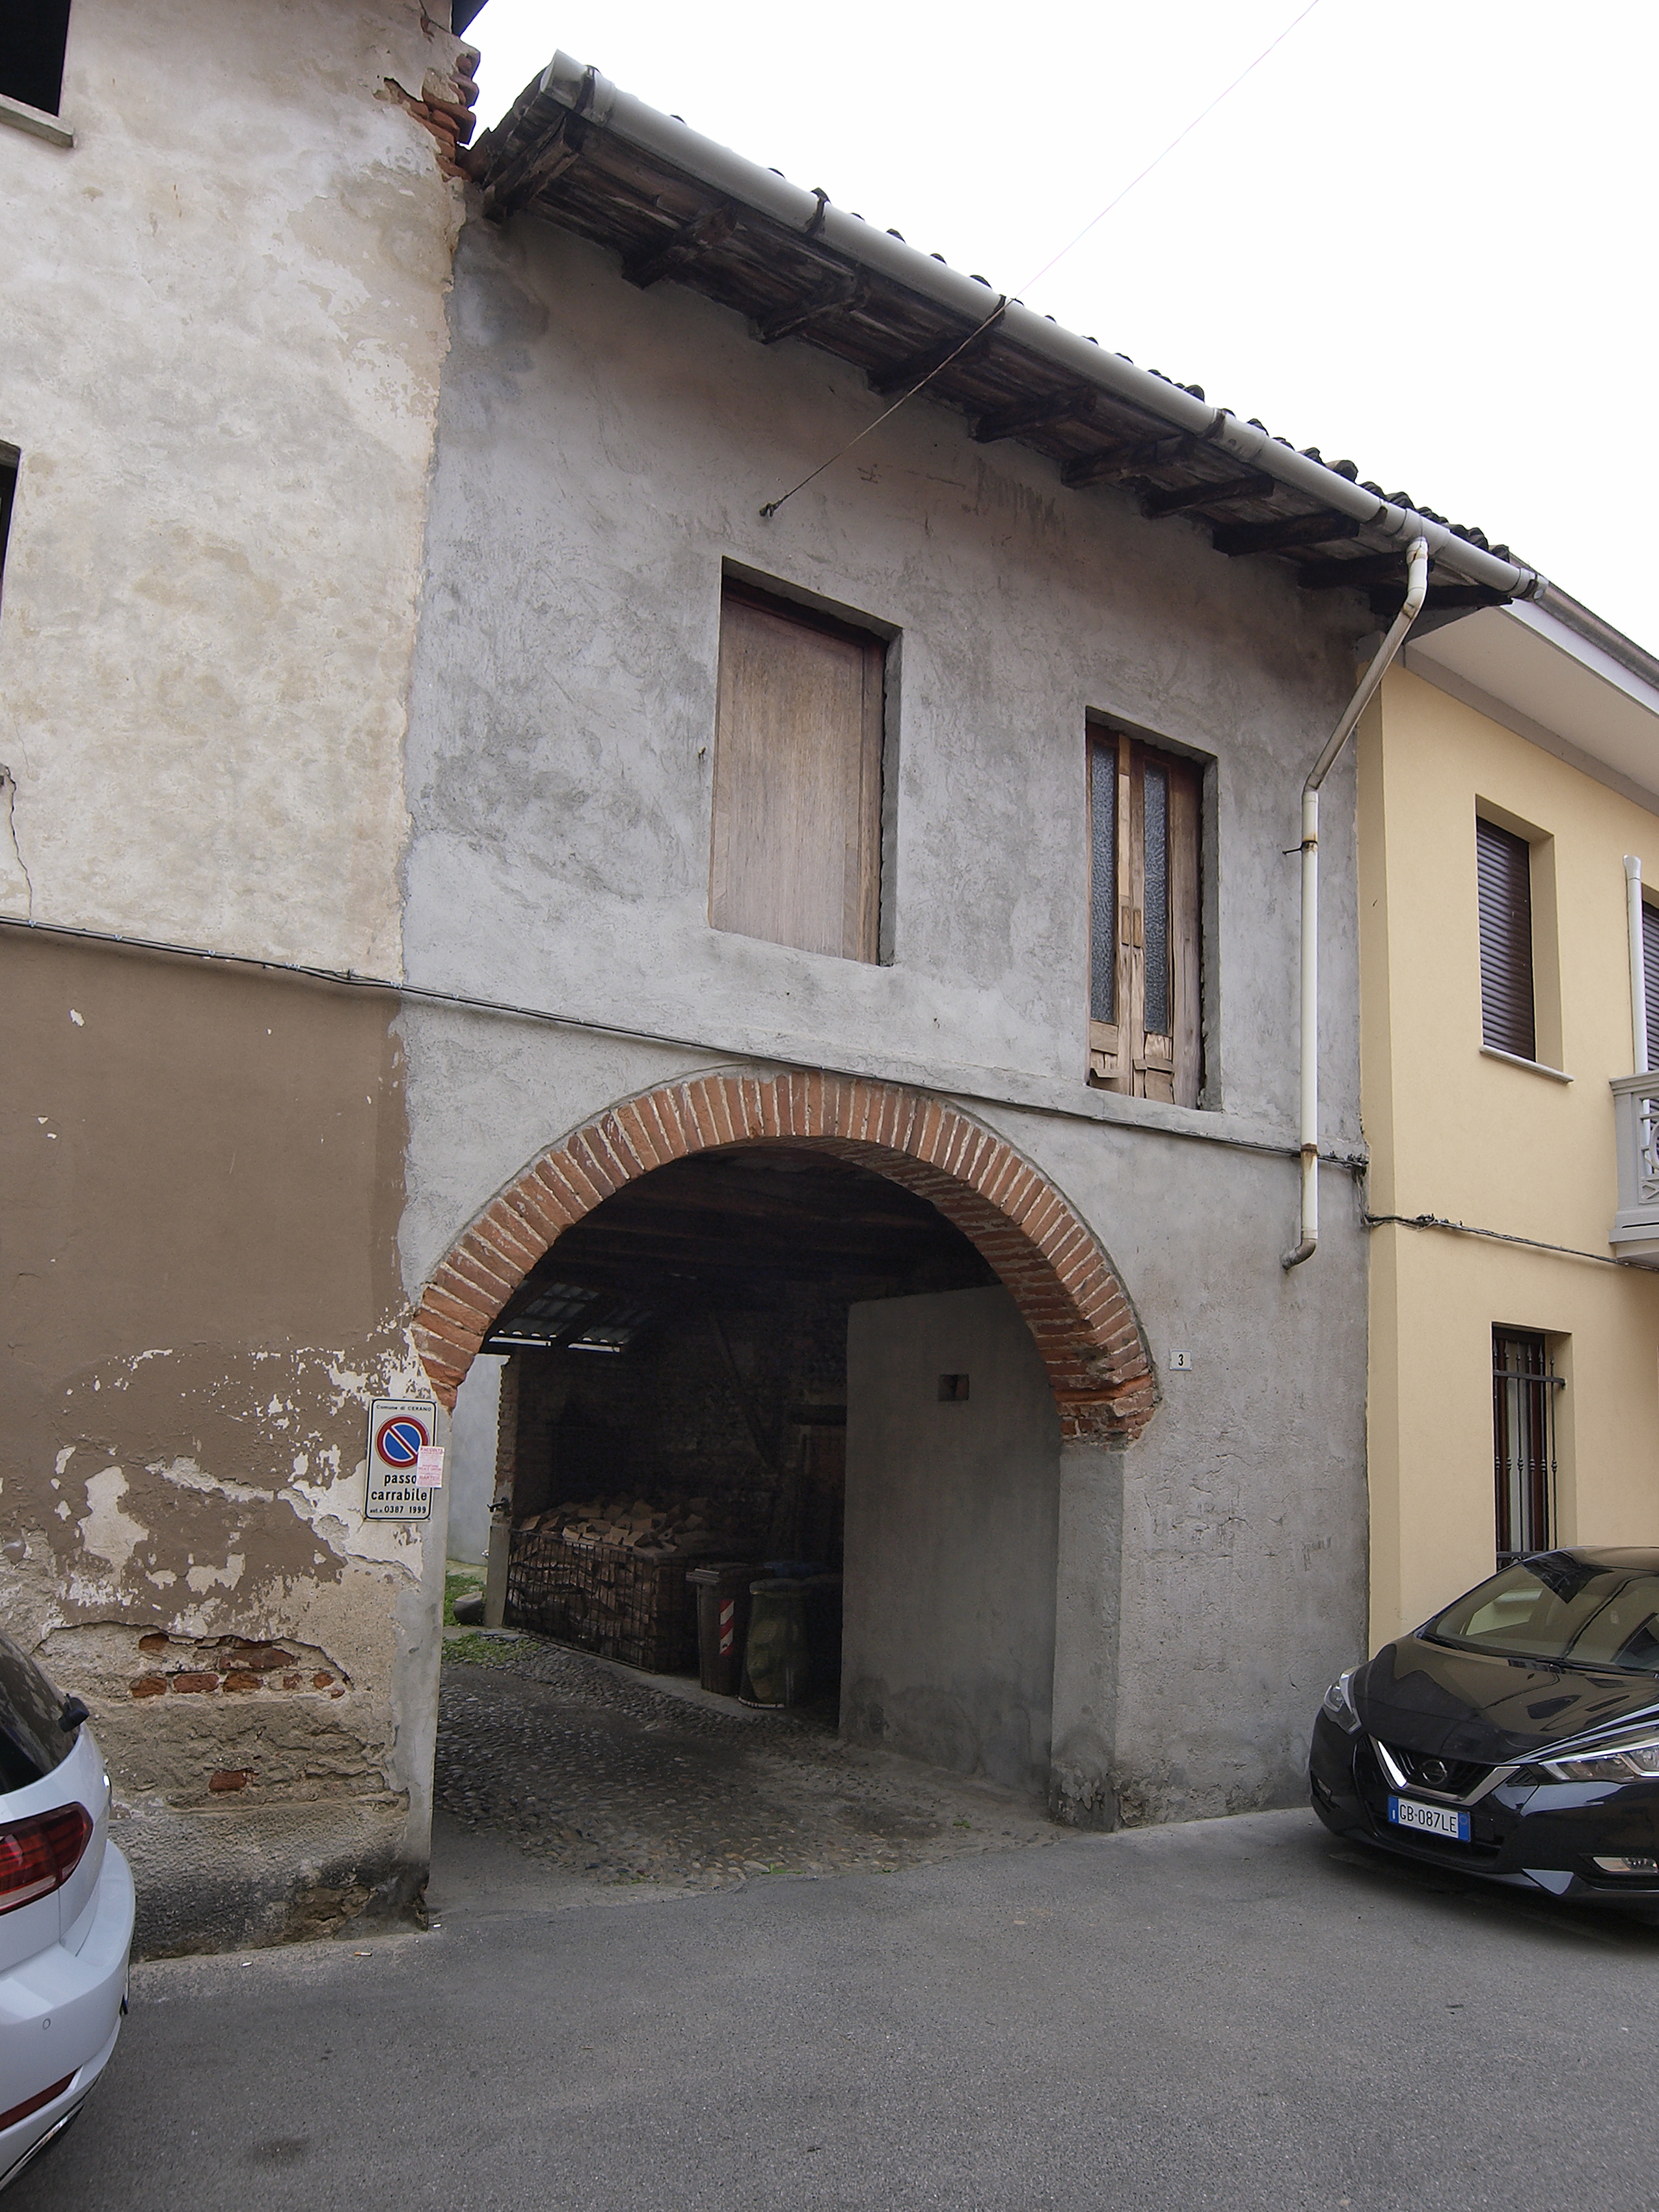 [Porta in Via Garibaldi, 3] (porta) - CERANO (NO)  (XVIII, inizio)